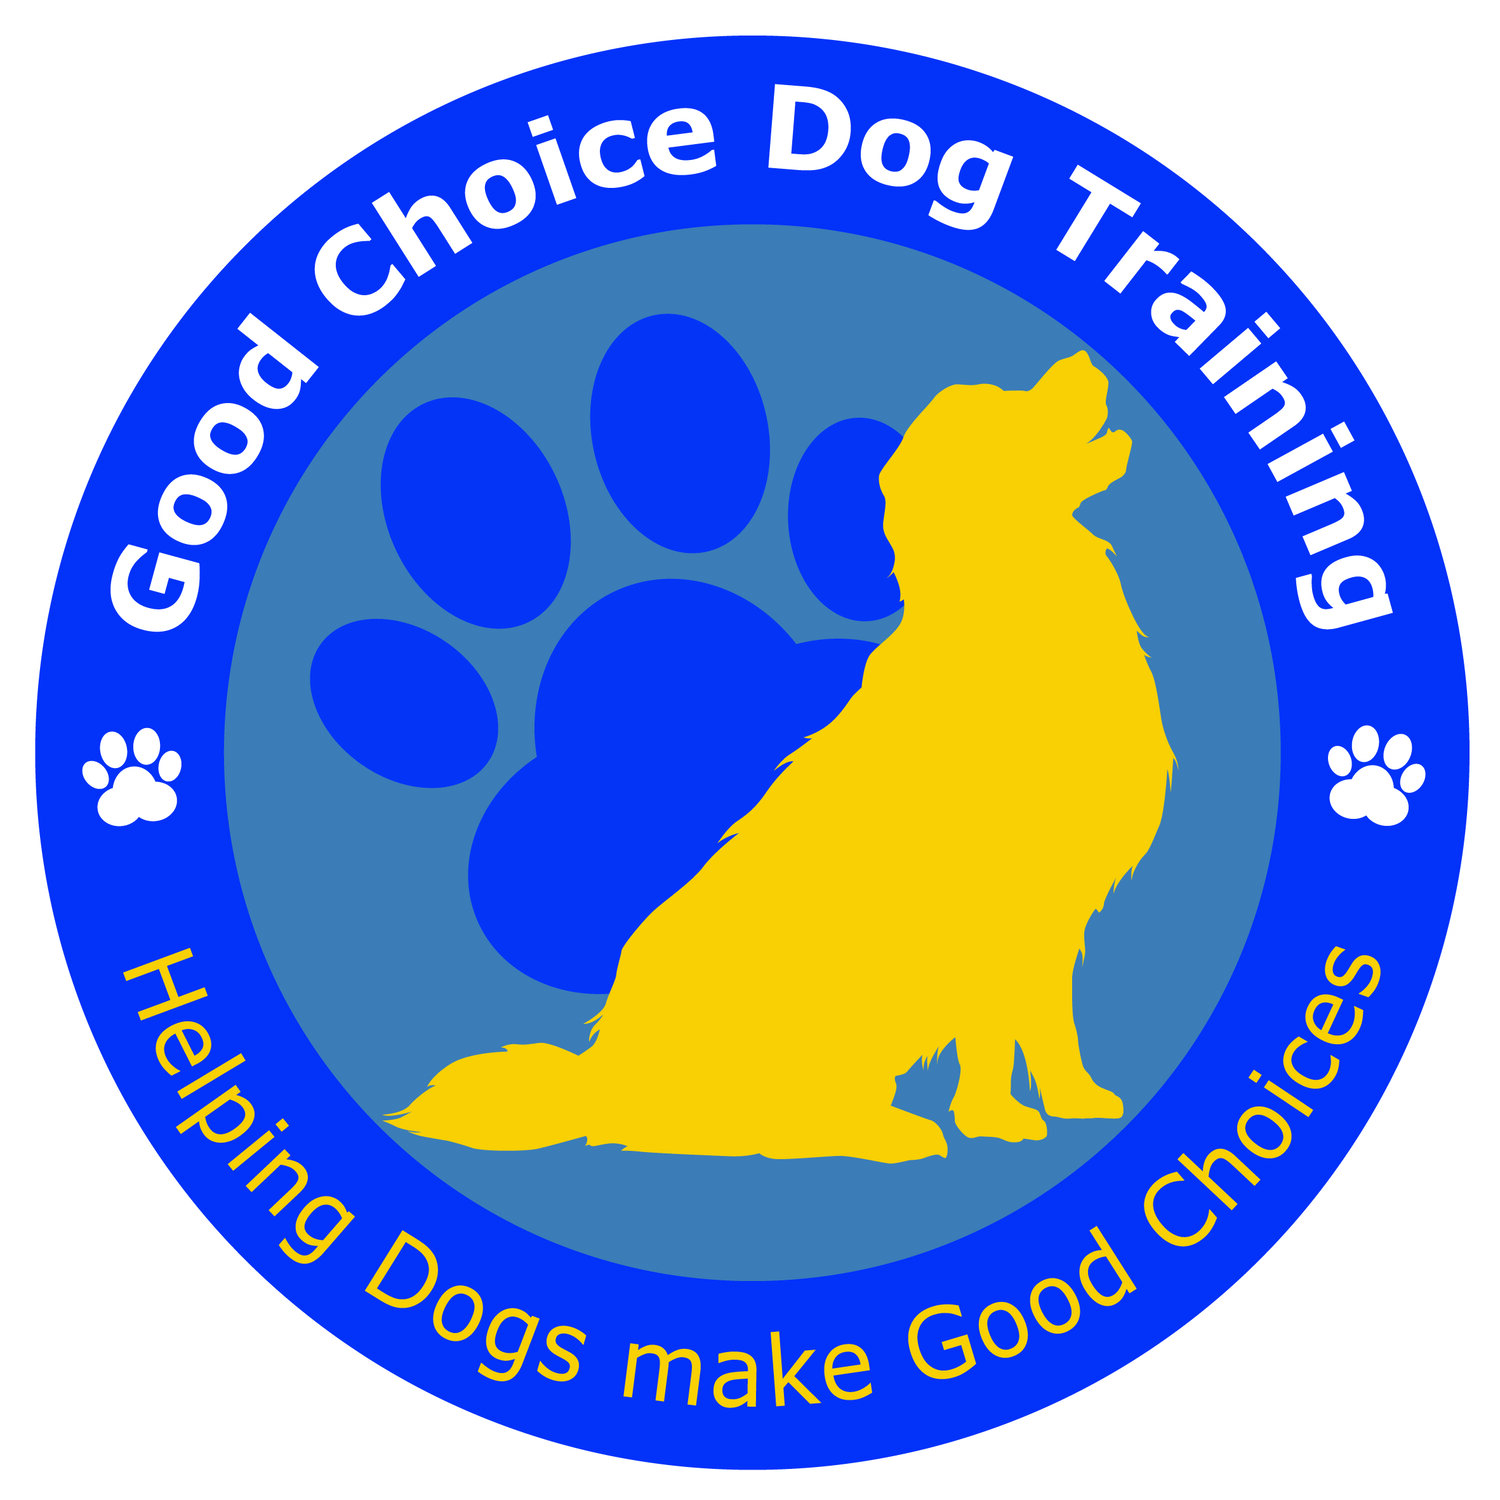 Good Choice Dog Training Ltd